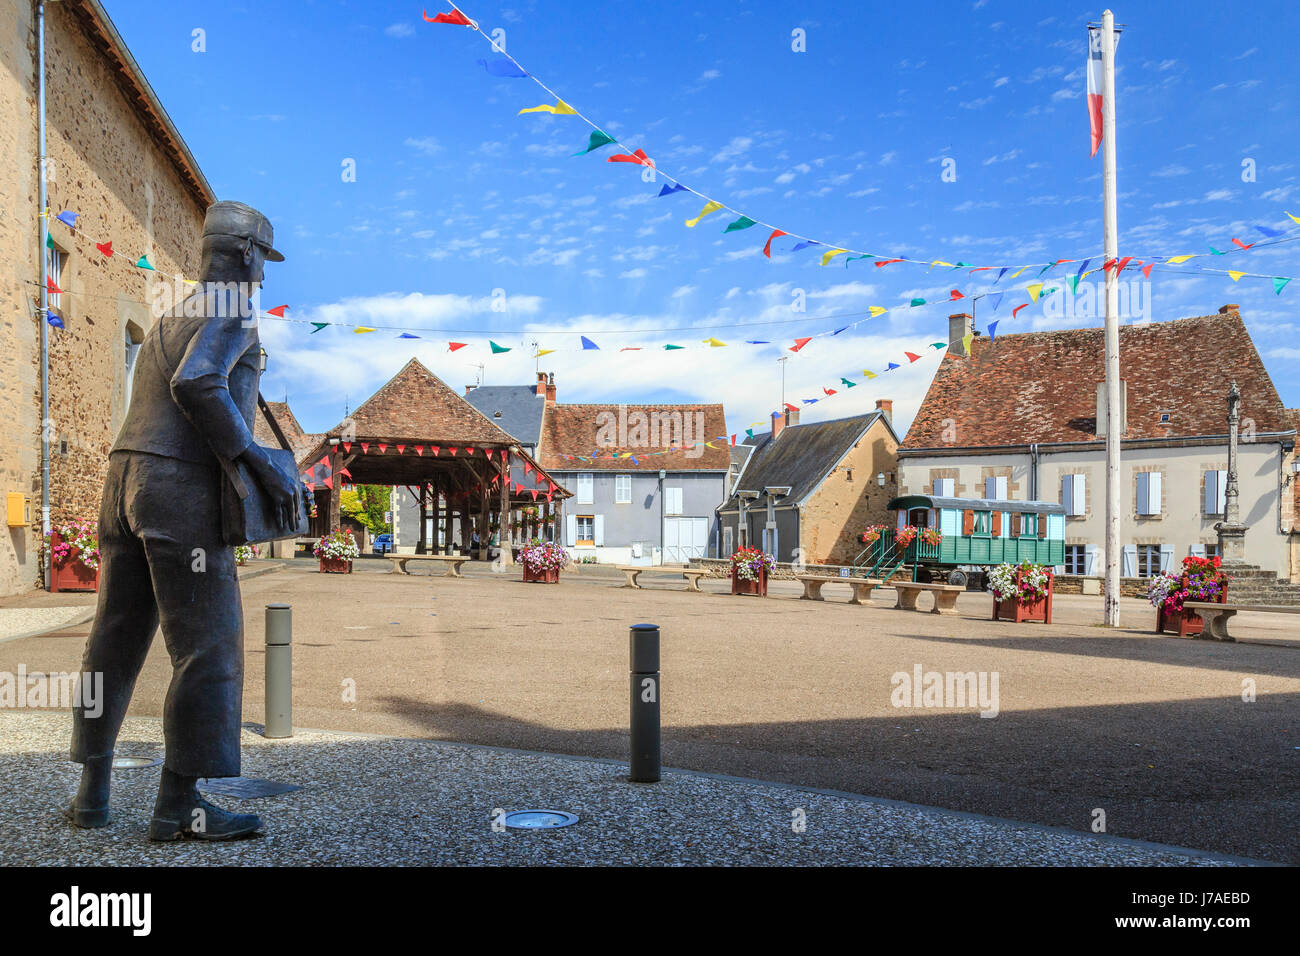 Frankreich, Indre, Sainte Severe sur Indre, Marche Platz, der Saal und Elemente erinnern an den Film Jour de Fete (der große Tag) von Jacques Tati Stockfoto